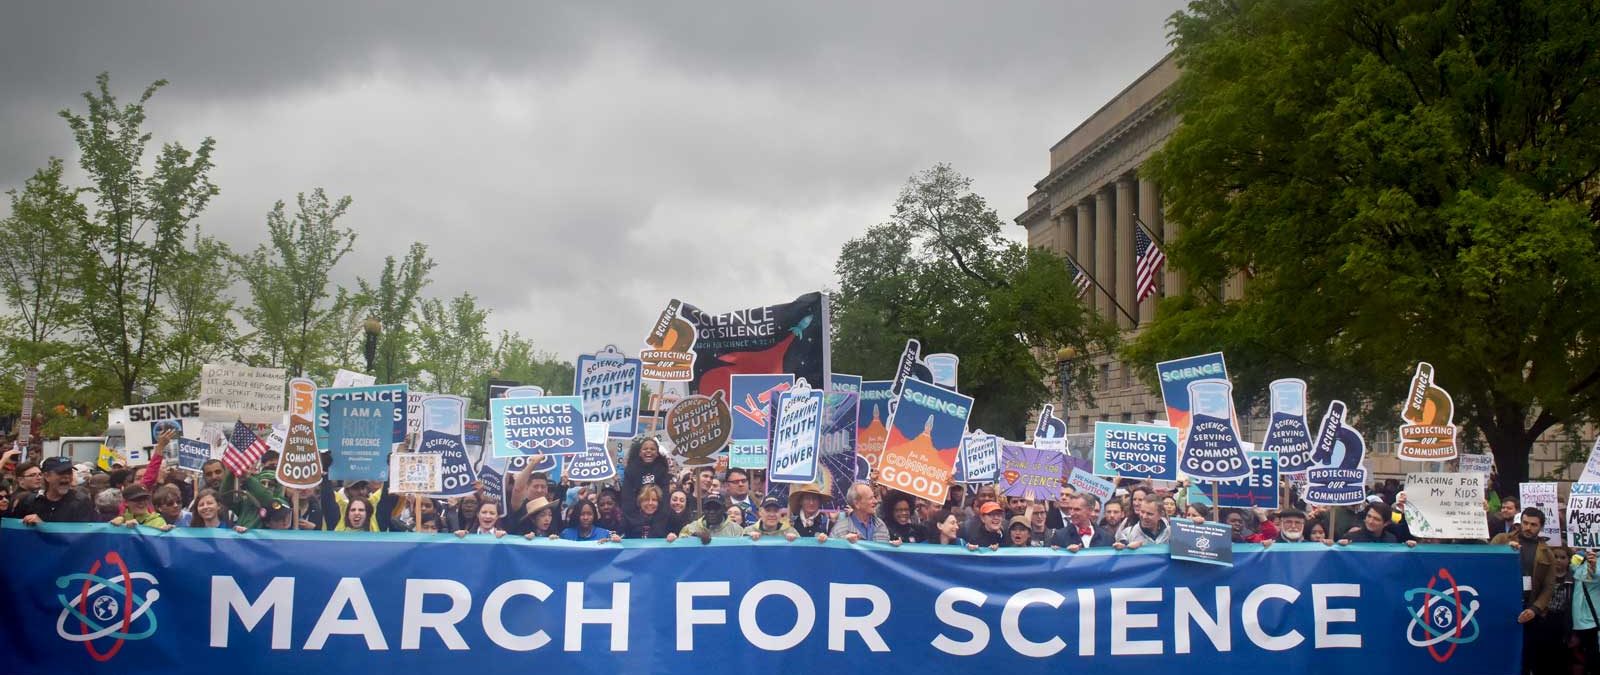 En stor uppslutning människor med plakat där det står "Science is good"och en stor banderoll där det står "March for science".